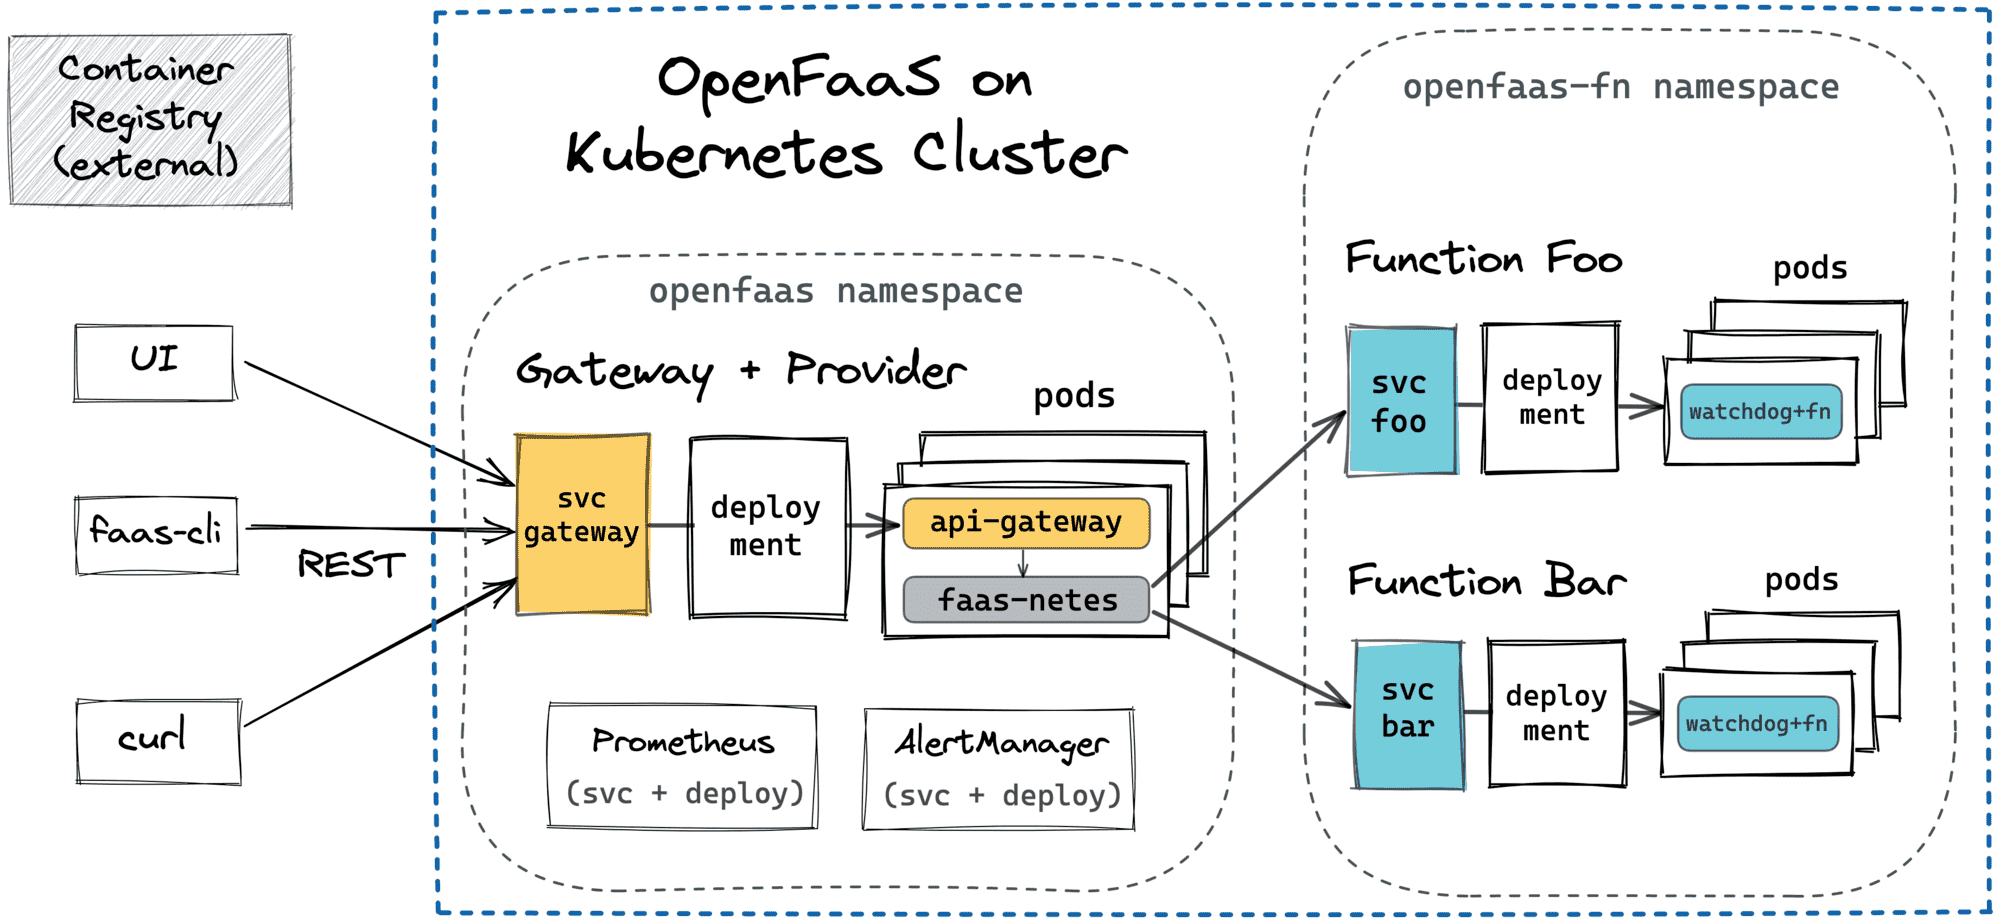 OpenFaaS on Kubernetes (faas-netes).